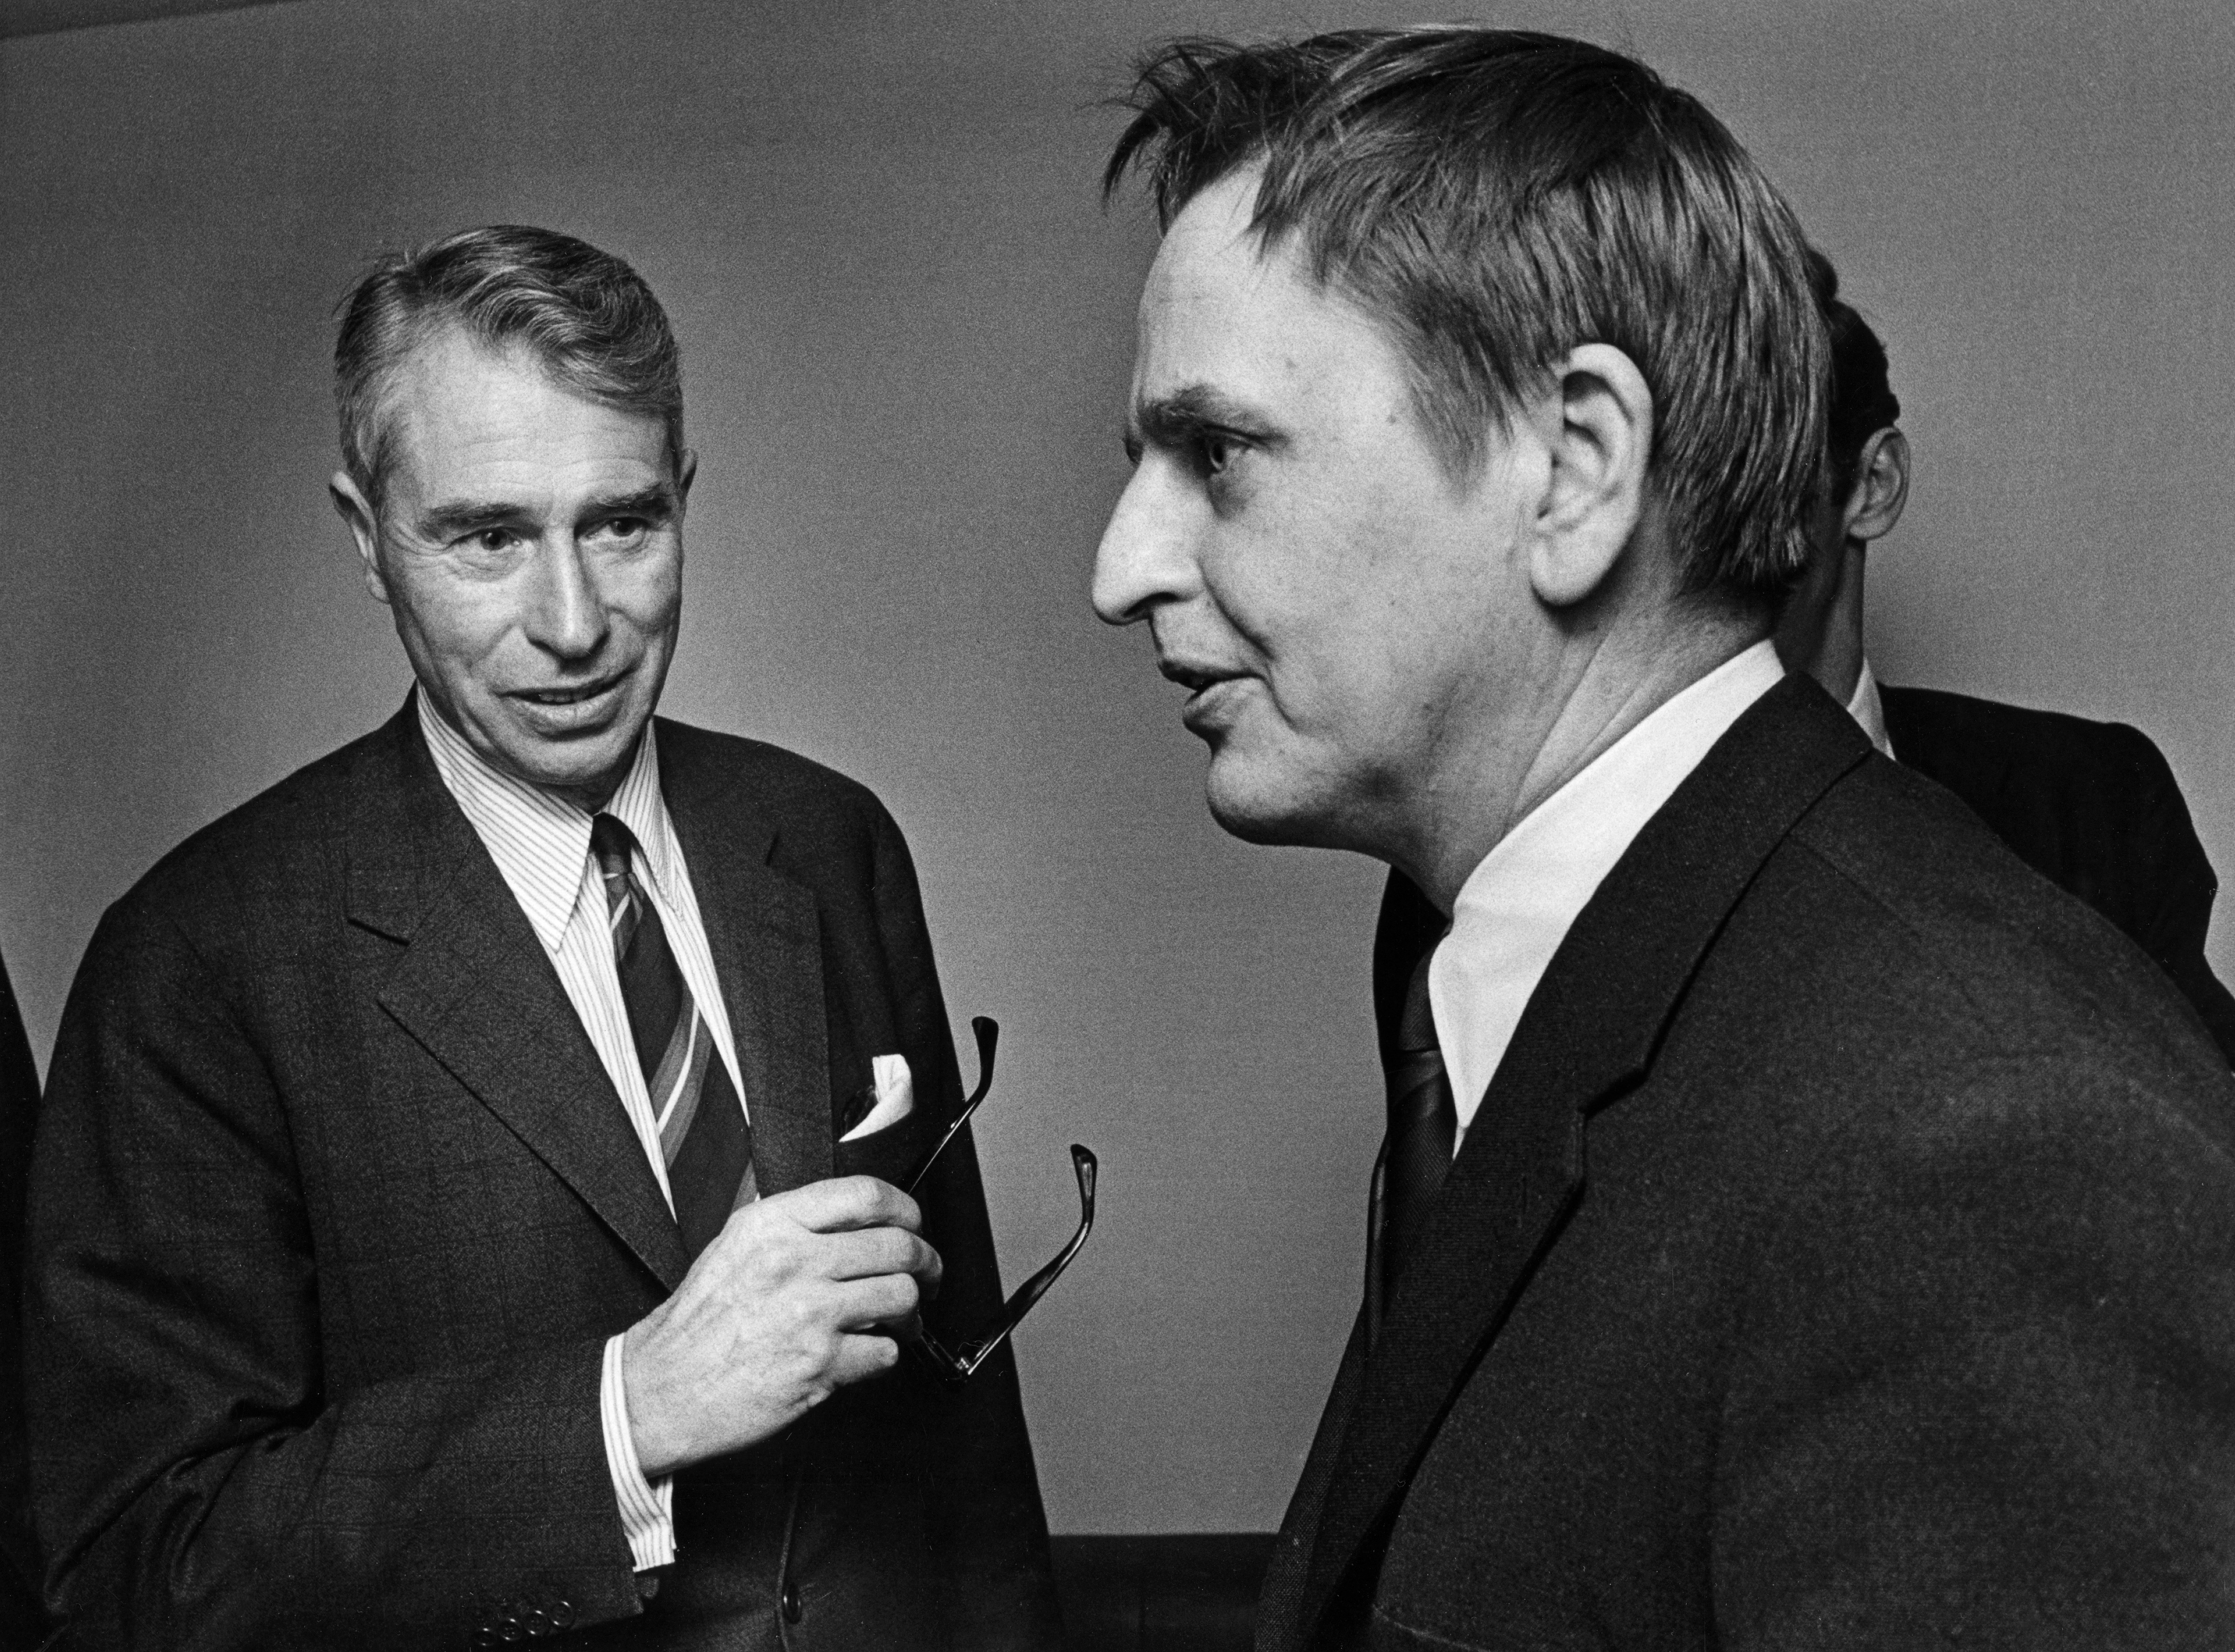 Om den politiska förebilden: "Jag har inga konkret minne av honom, men Olof Palme var jävligt inspirerande av det jag har hört och läst."